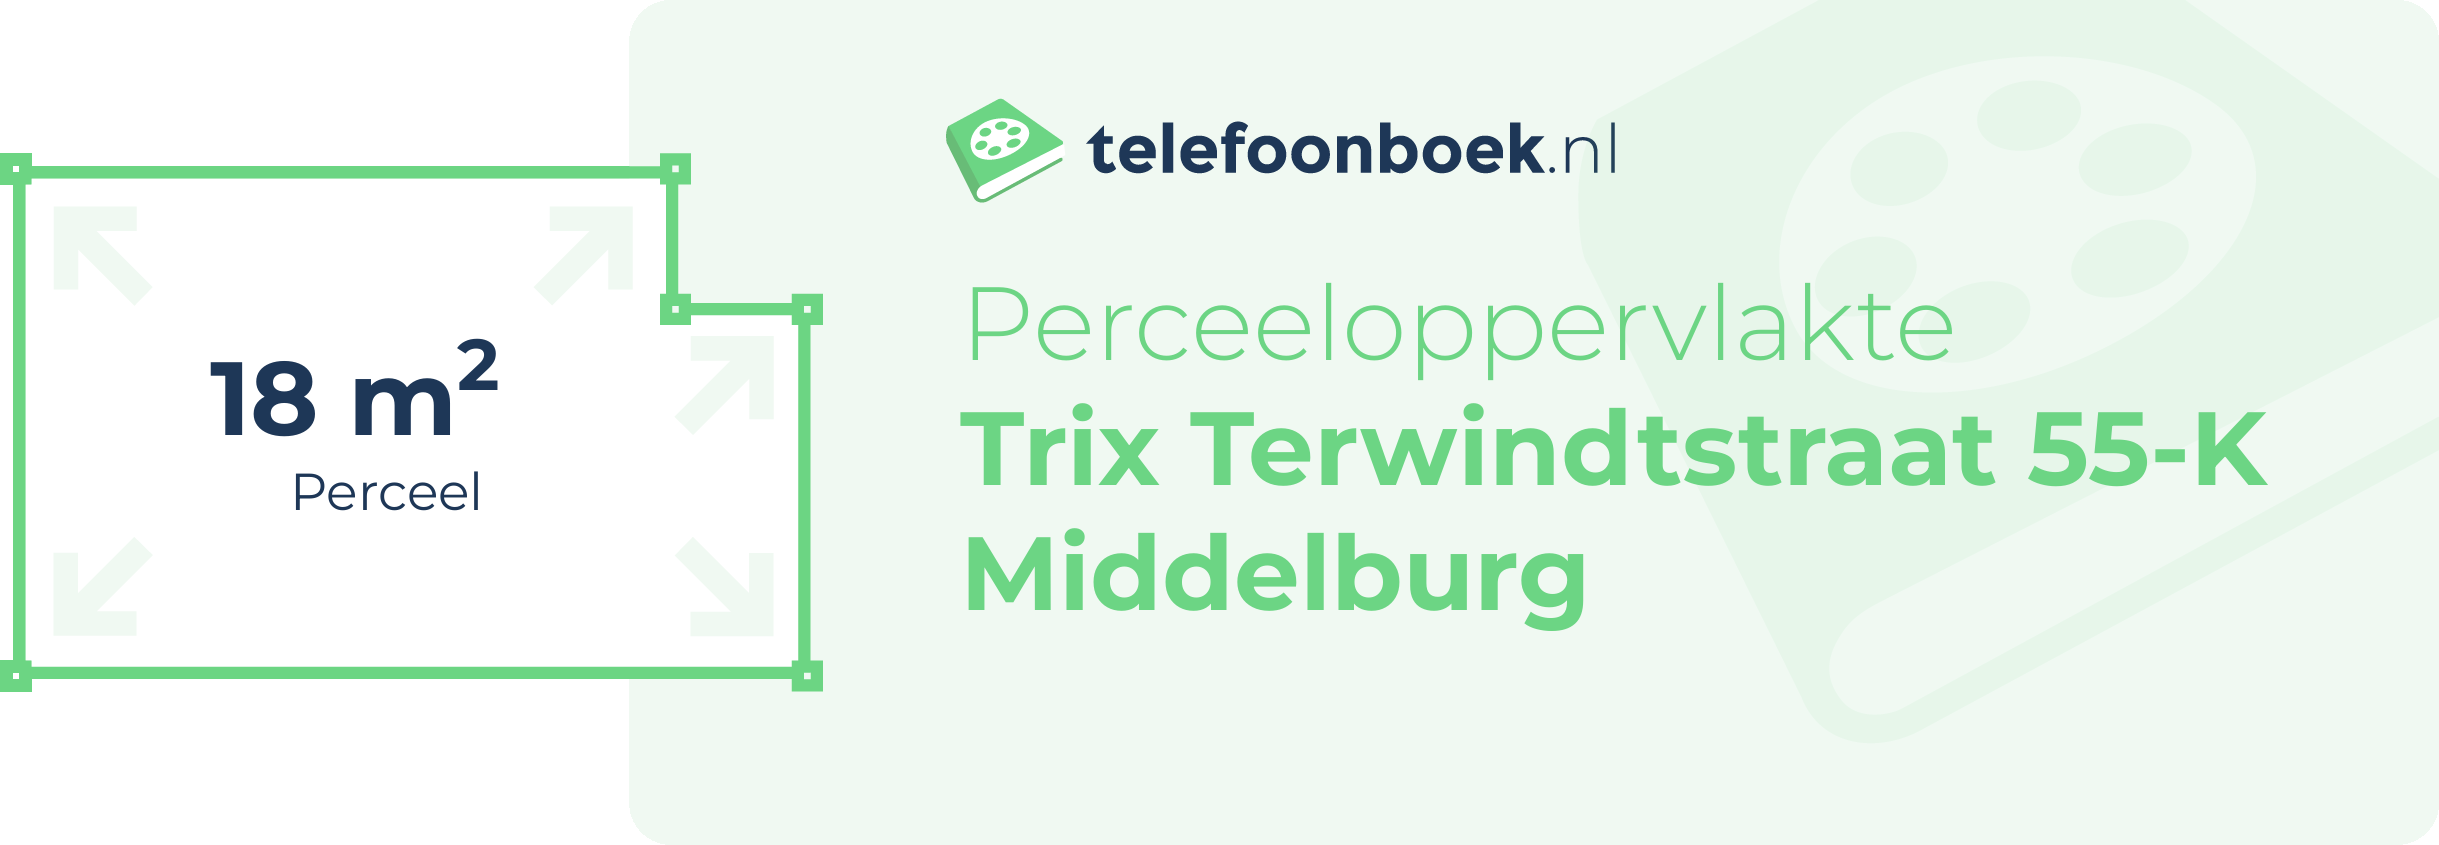 Perceeloppervlakte Trix Terwindtstraat 55-K Middelburg